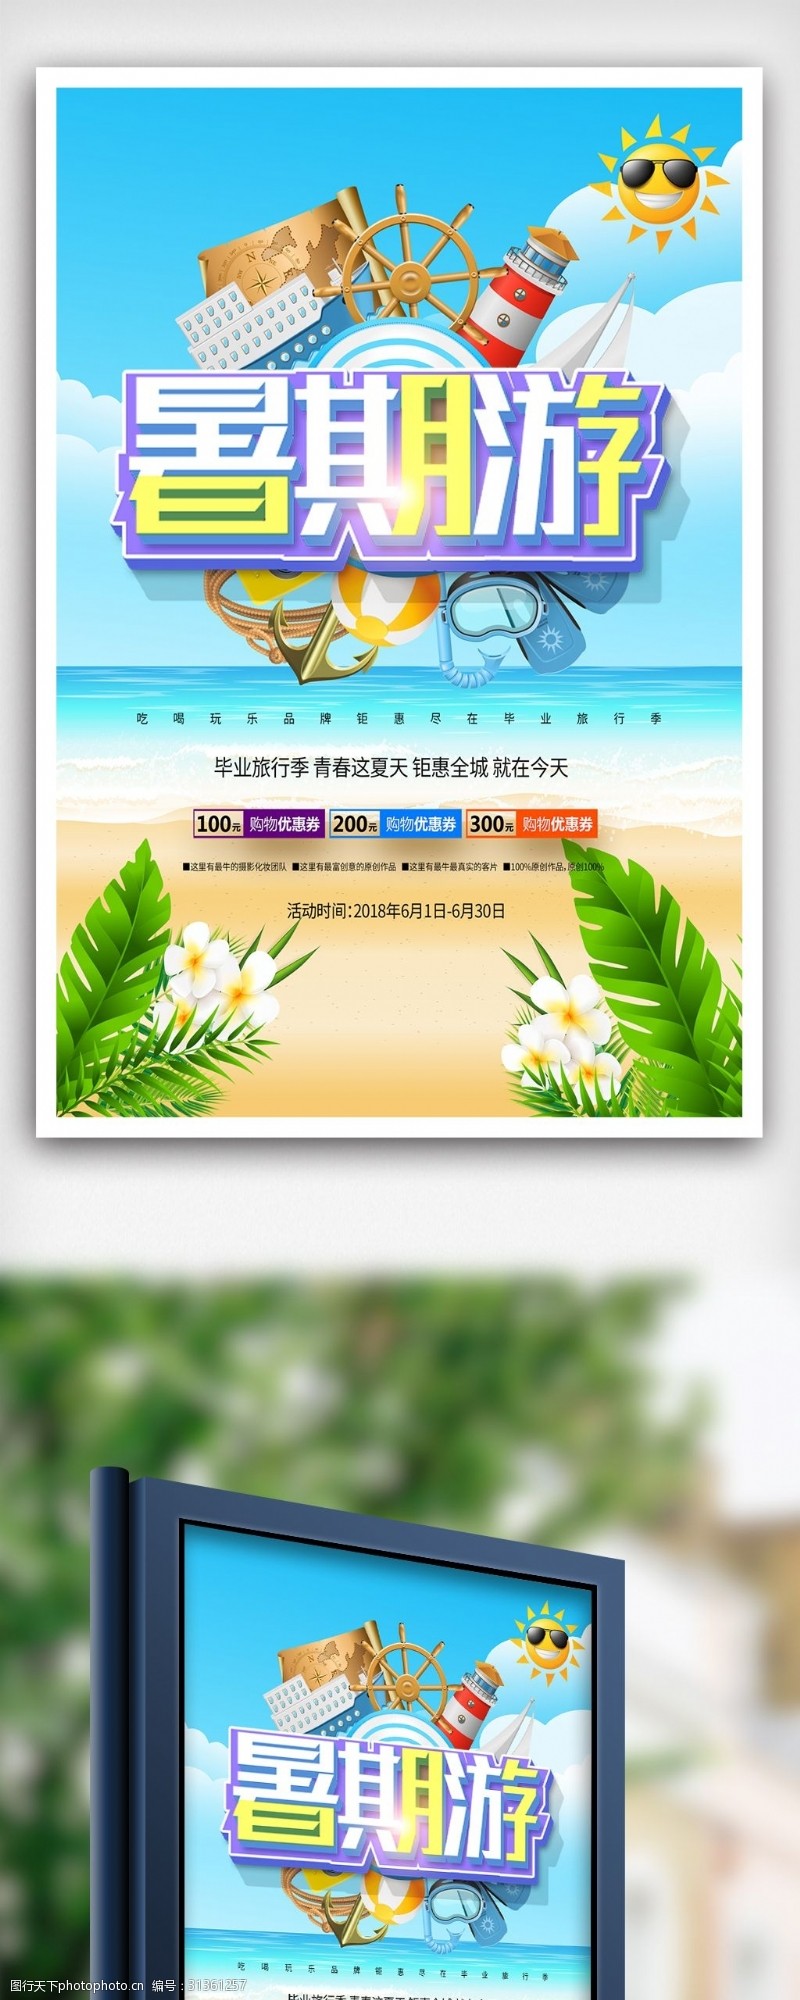 驴友旅游创意立体字暑期旅游宣传海报设计